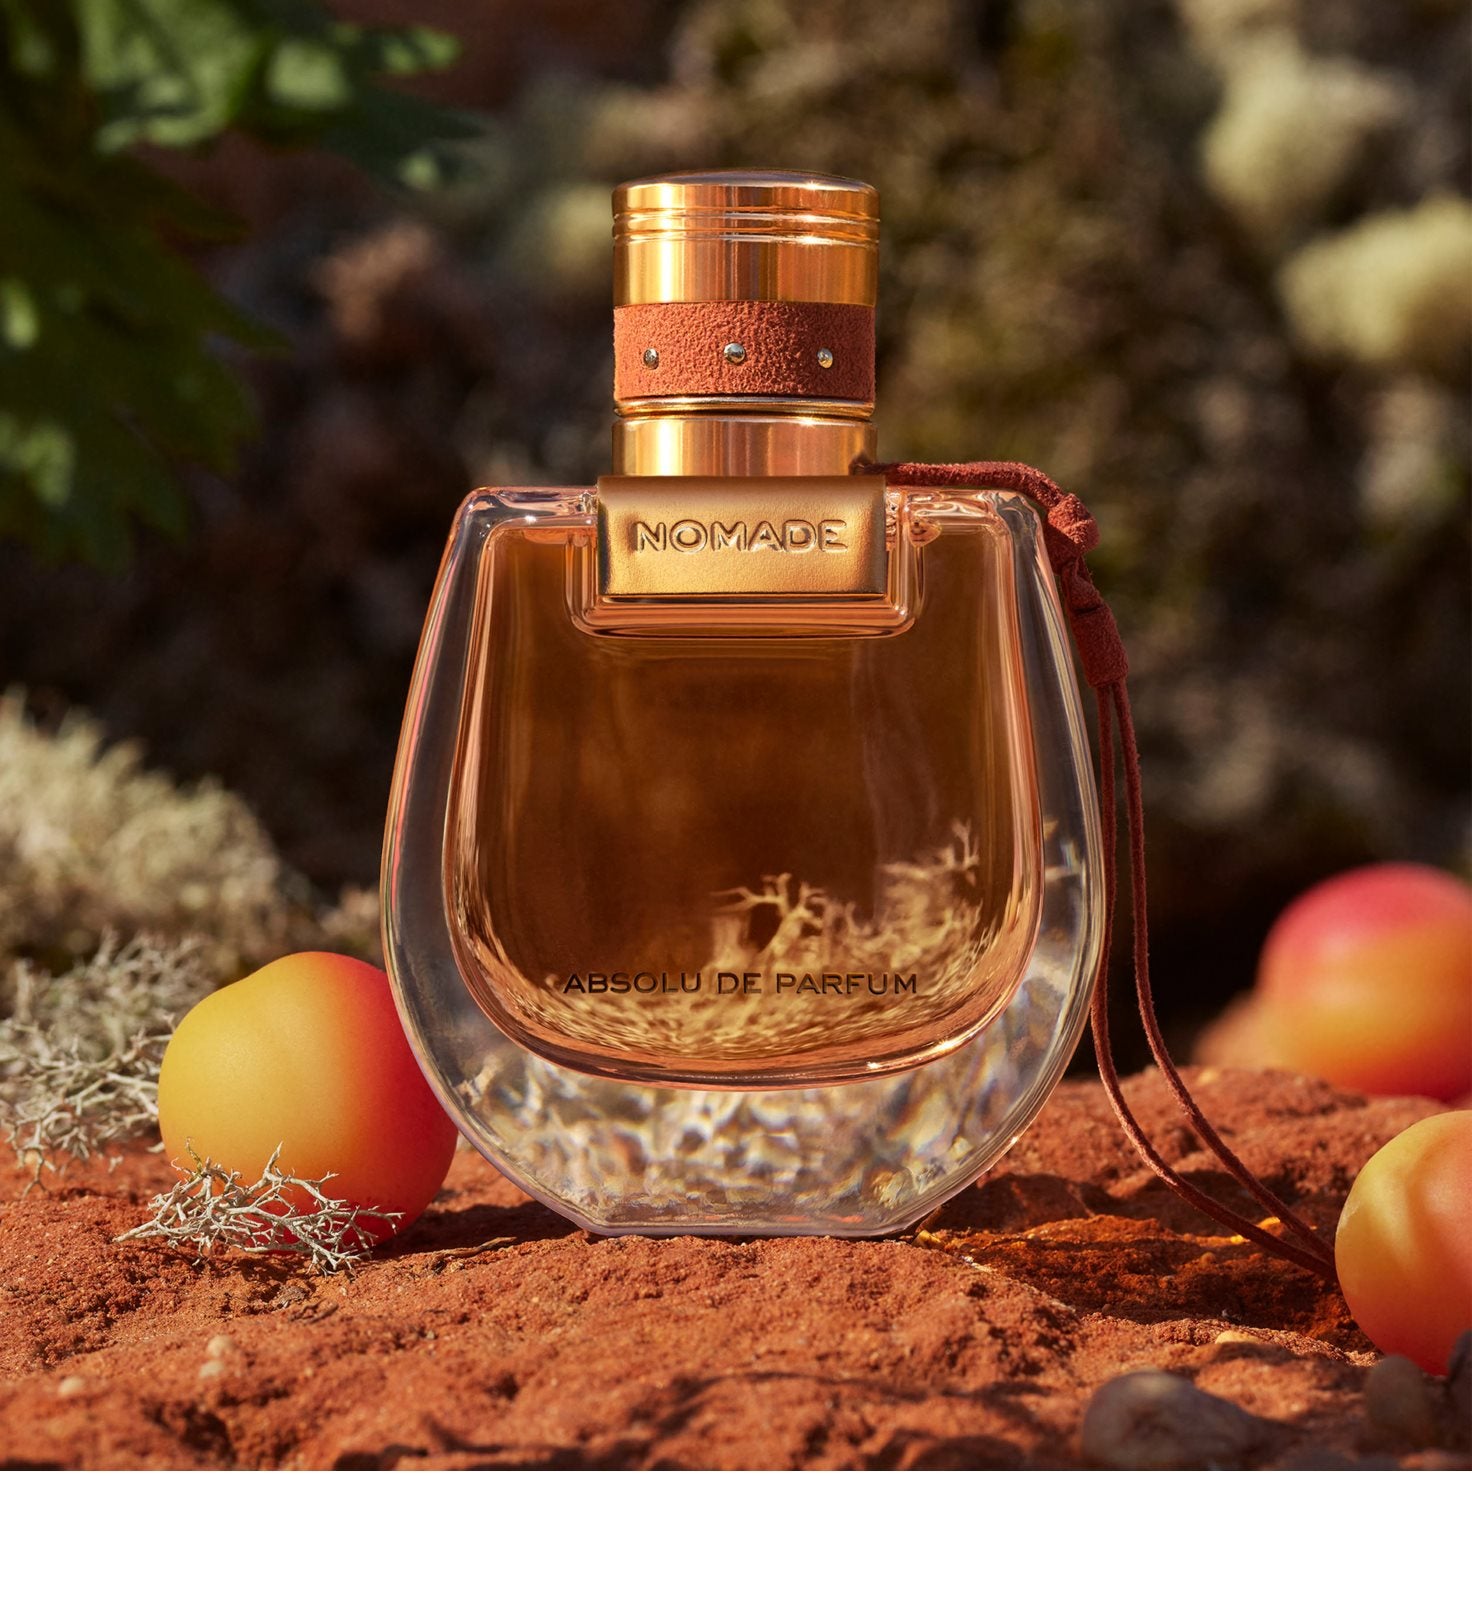 Parfum – Nomade AG 30 BS24 Absolu Chloé ml Switzerland de